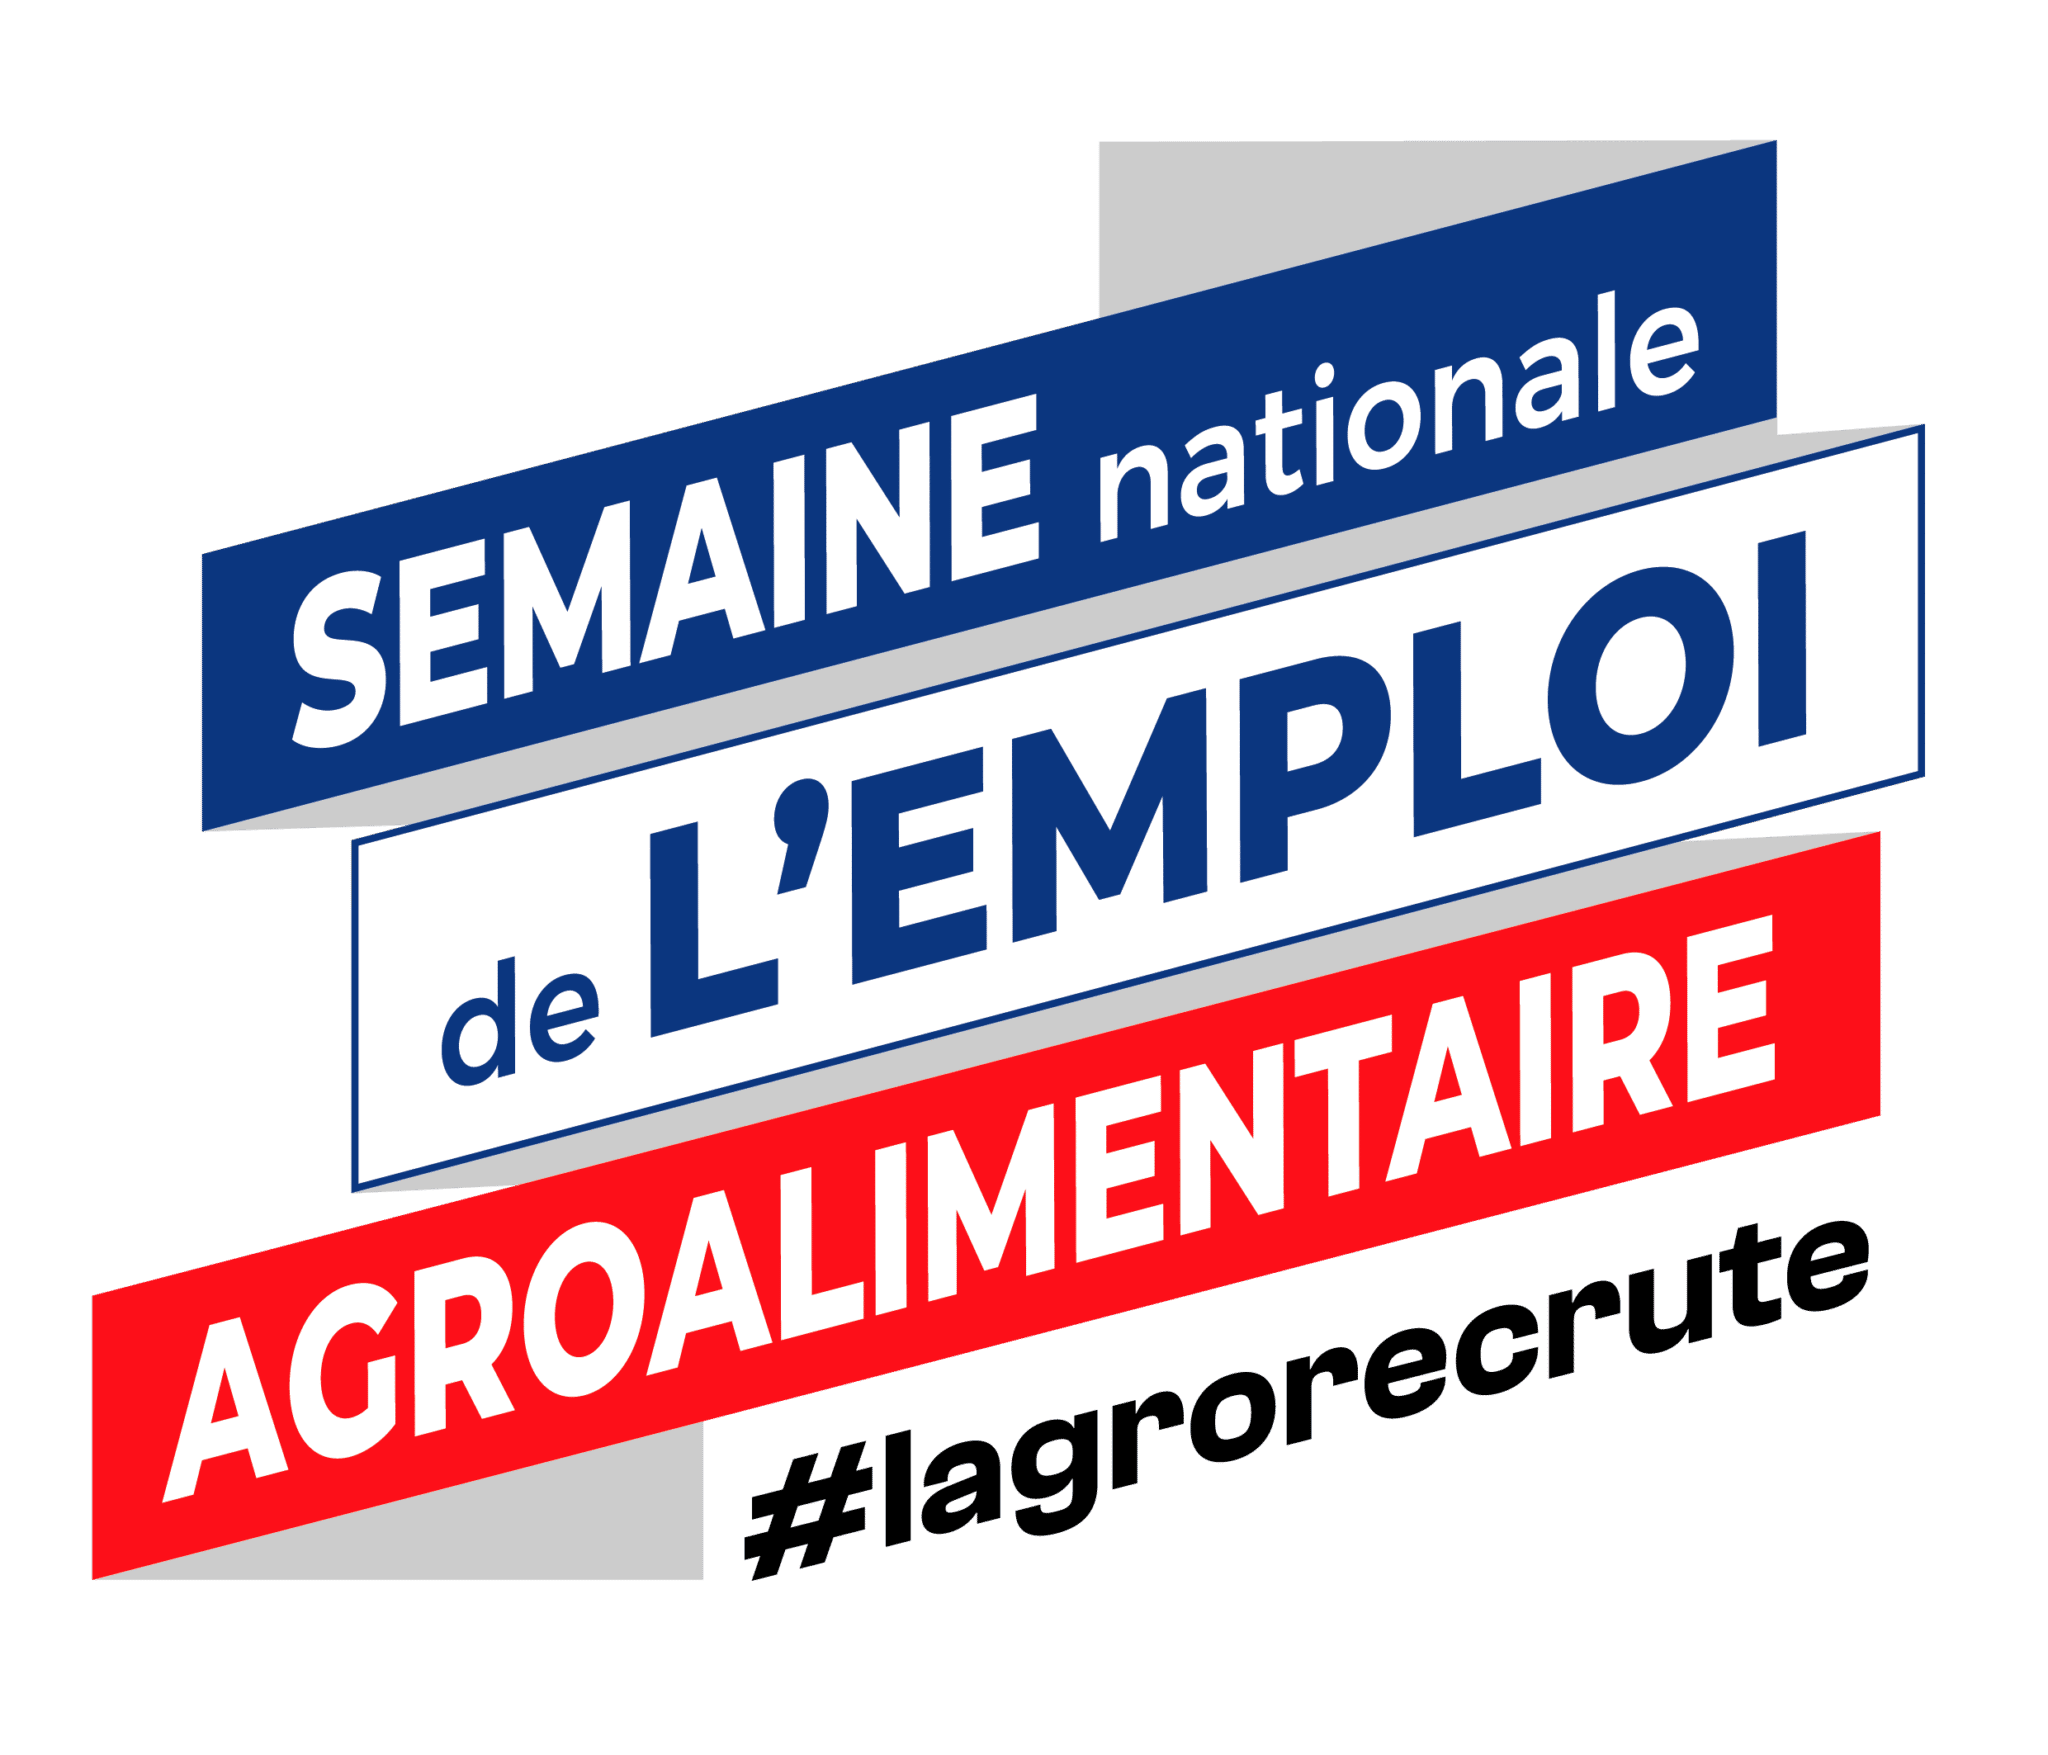 Du 14 au 18 novembre, se tient la 2ème édition de la Semaine nationale de l’emploi agroalimentaire.